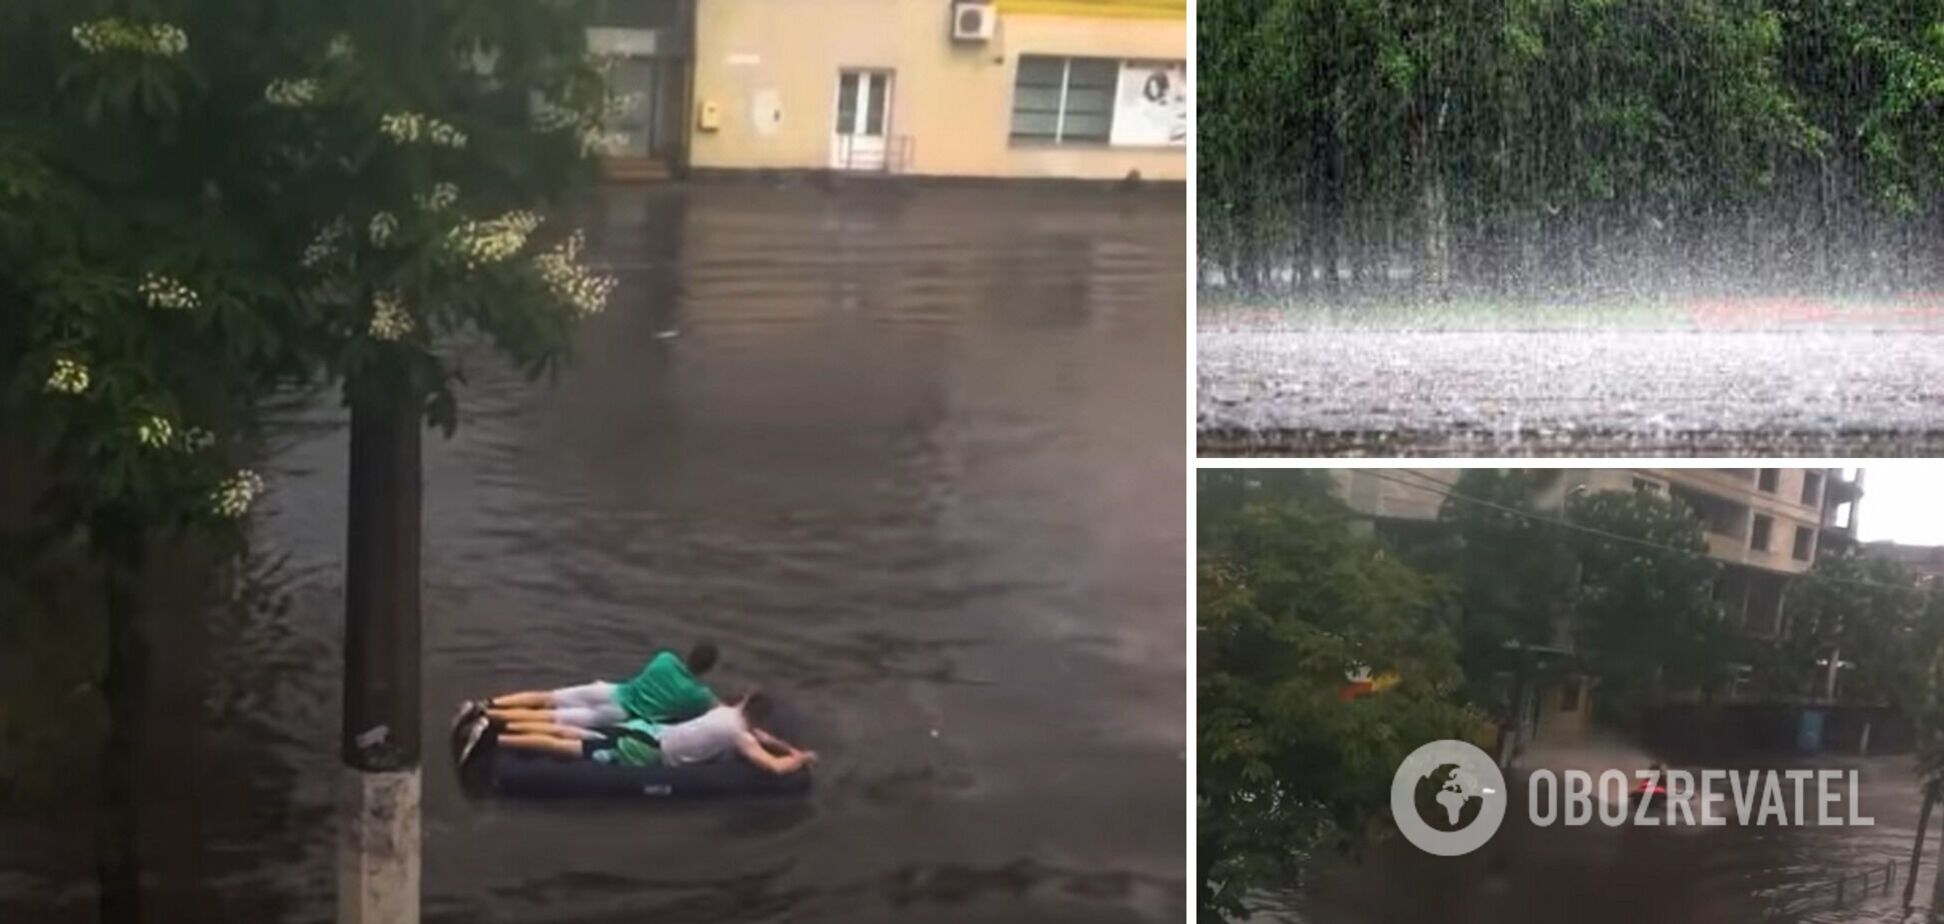 Житомир затопило после ливня: люди добираются вплавь на матрасах и гидроциклах. Фото, видео